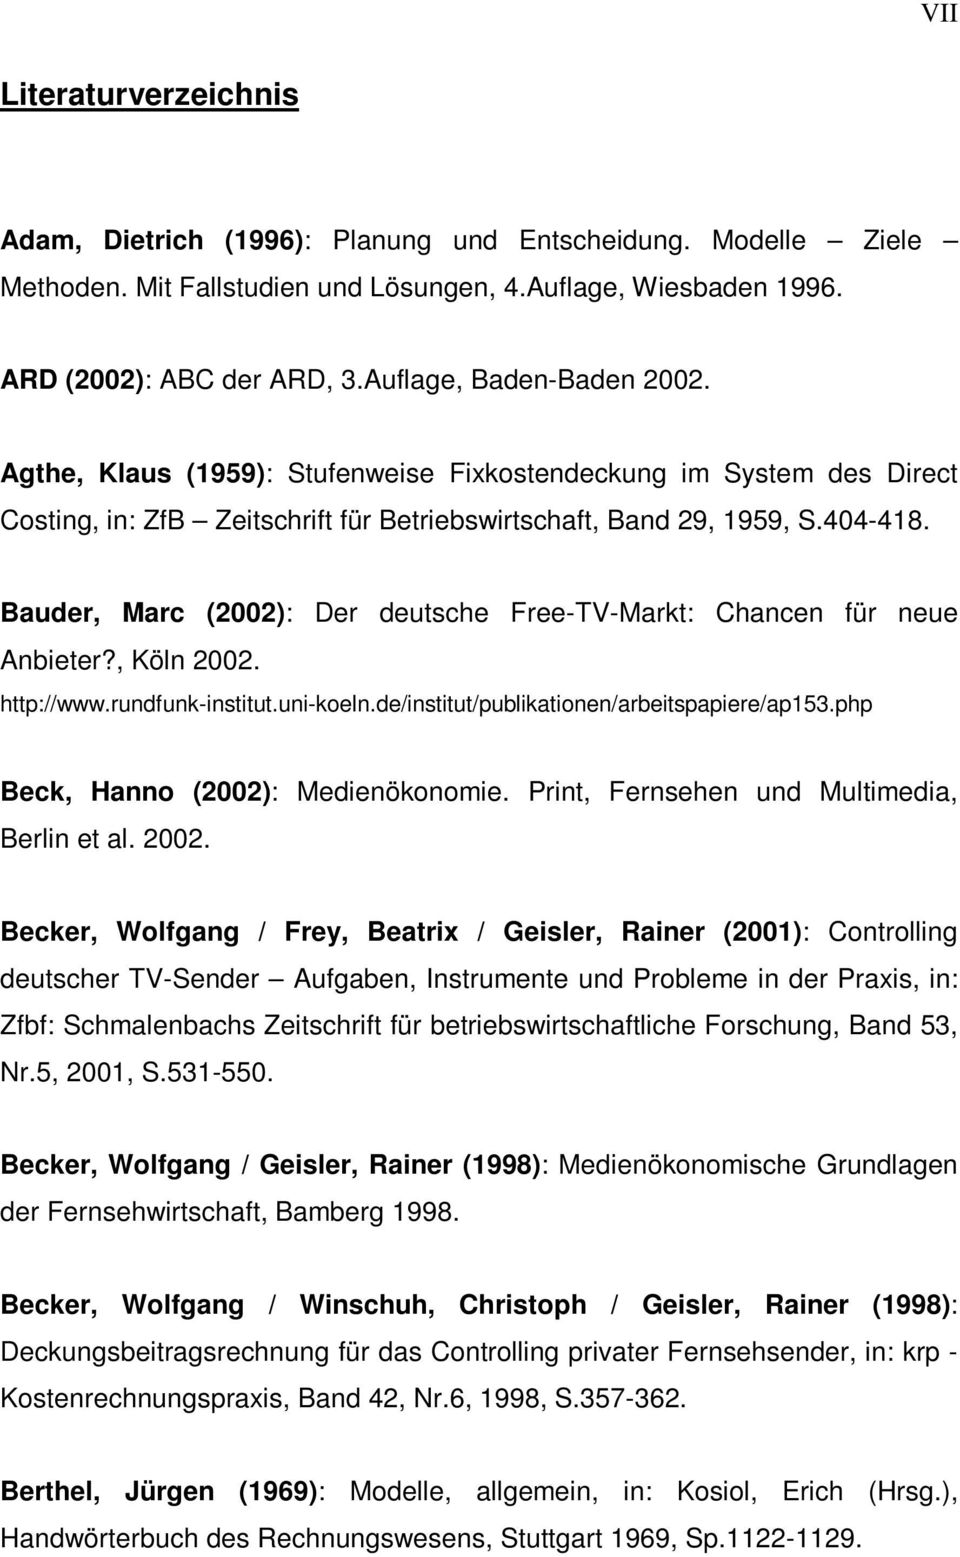 Bauder, Marc (2002): Der deutsche Free-TV-Markt: Chancen für neue Anbieter?, Köln 2002. http://www.rundfunk-institut.uni-koeln.de/institut/publikationen/arbeitspapiere/ap153.